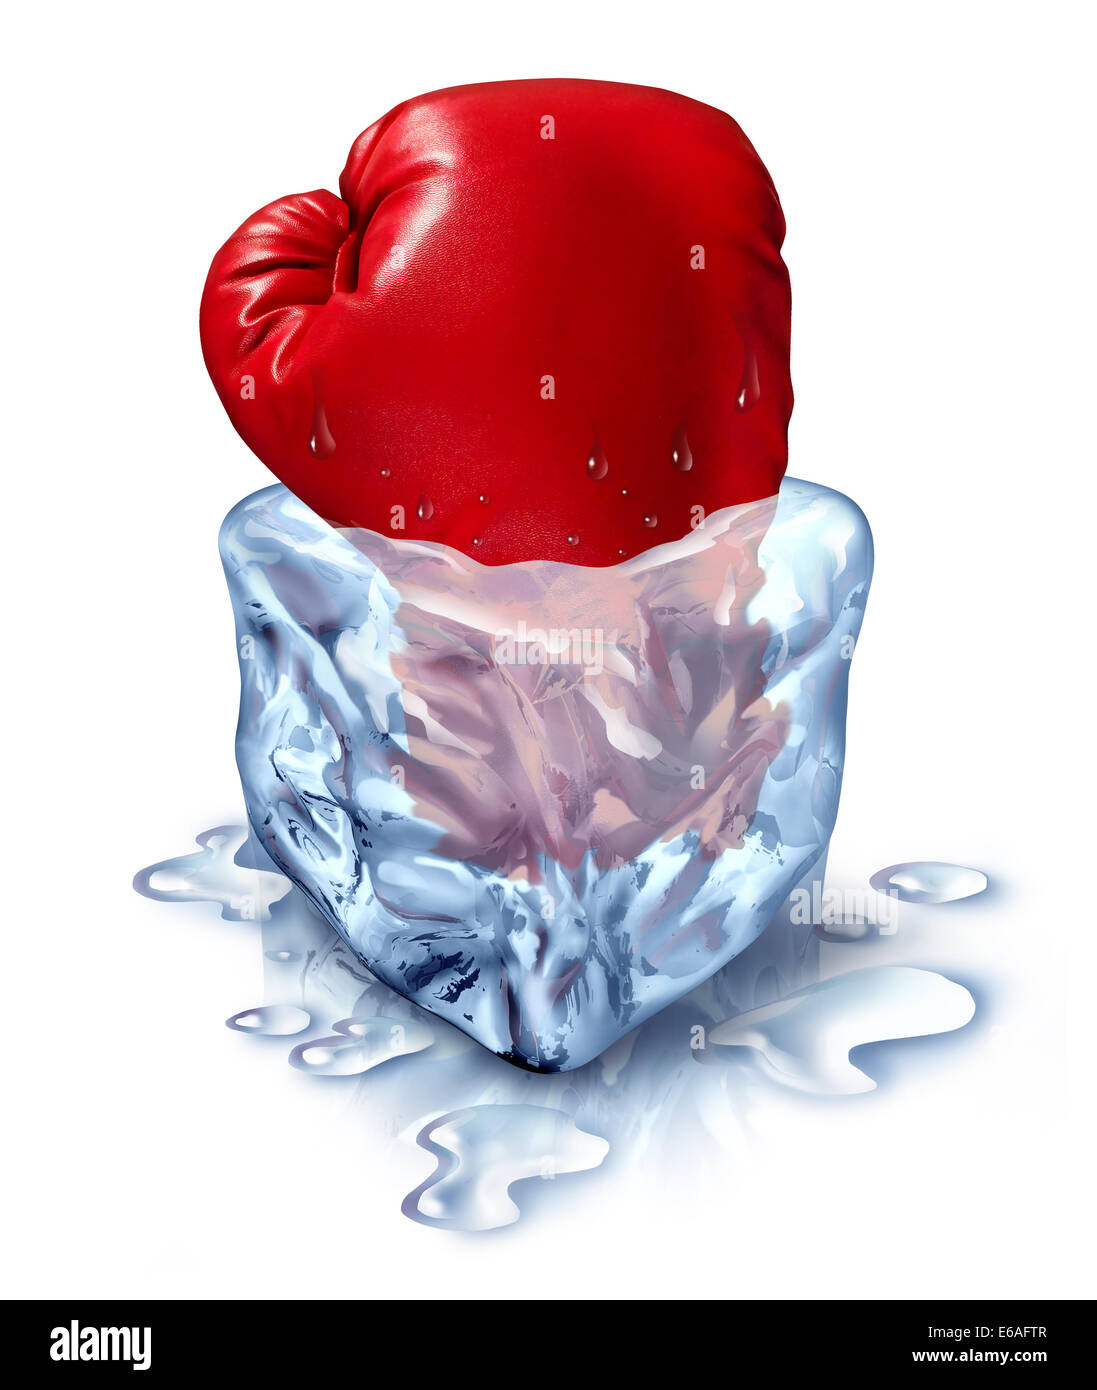 Einfrieren, die Wettbewerb-Business-Konzept als eine rote Boxhandschuh in einen Eiswürfel als Metapher für die Chill-out mit einer frischen Konkurrenten Symbol oder gefrorenen Finanzanlagen. Stockfoto